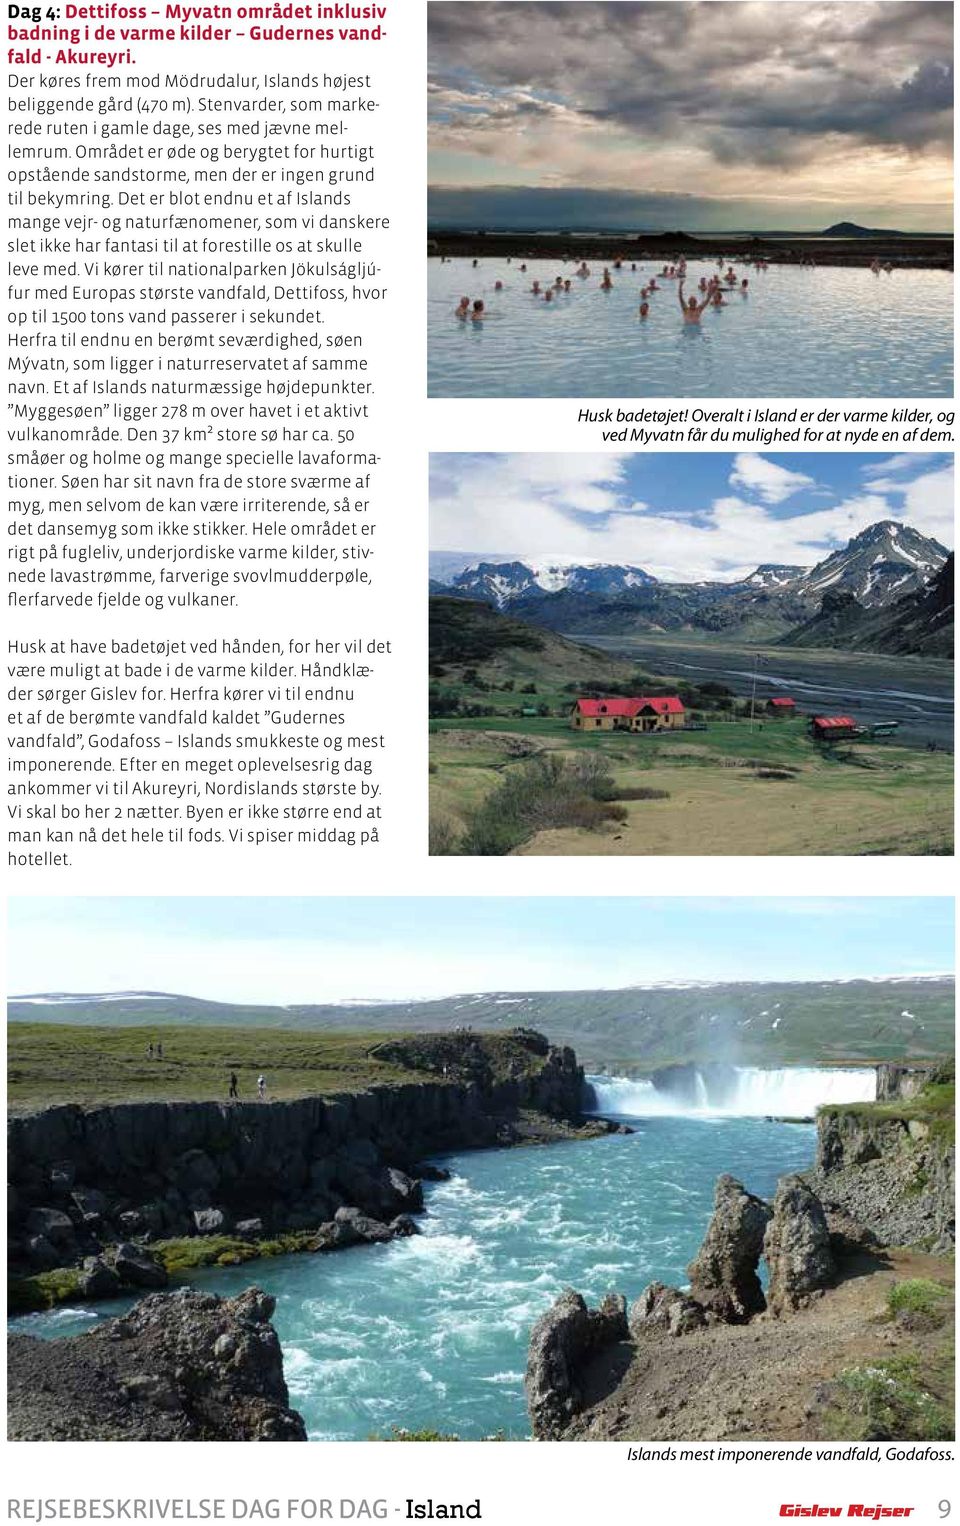 Det er blot endnu et af Islands mange vejr- og naturfænomener, som vi danskere slet ikke har fantasi til at forestille os at skulle leve med.